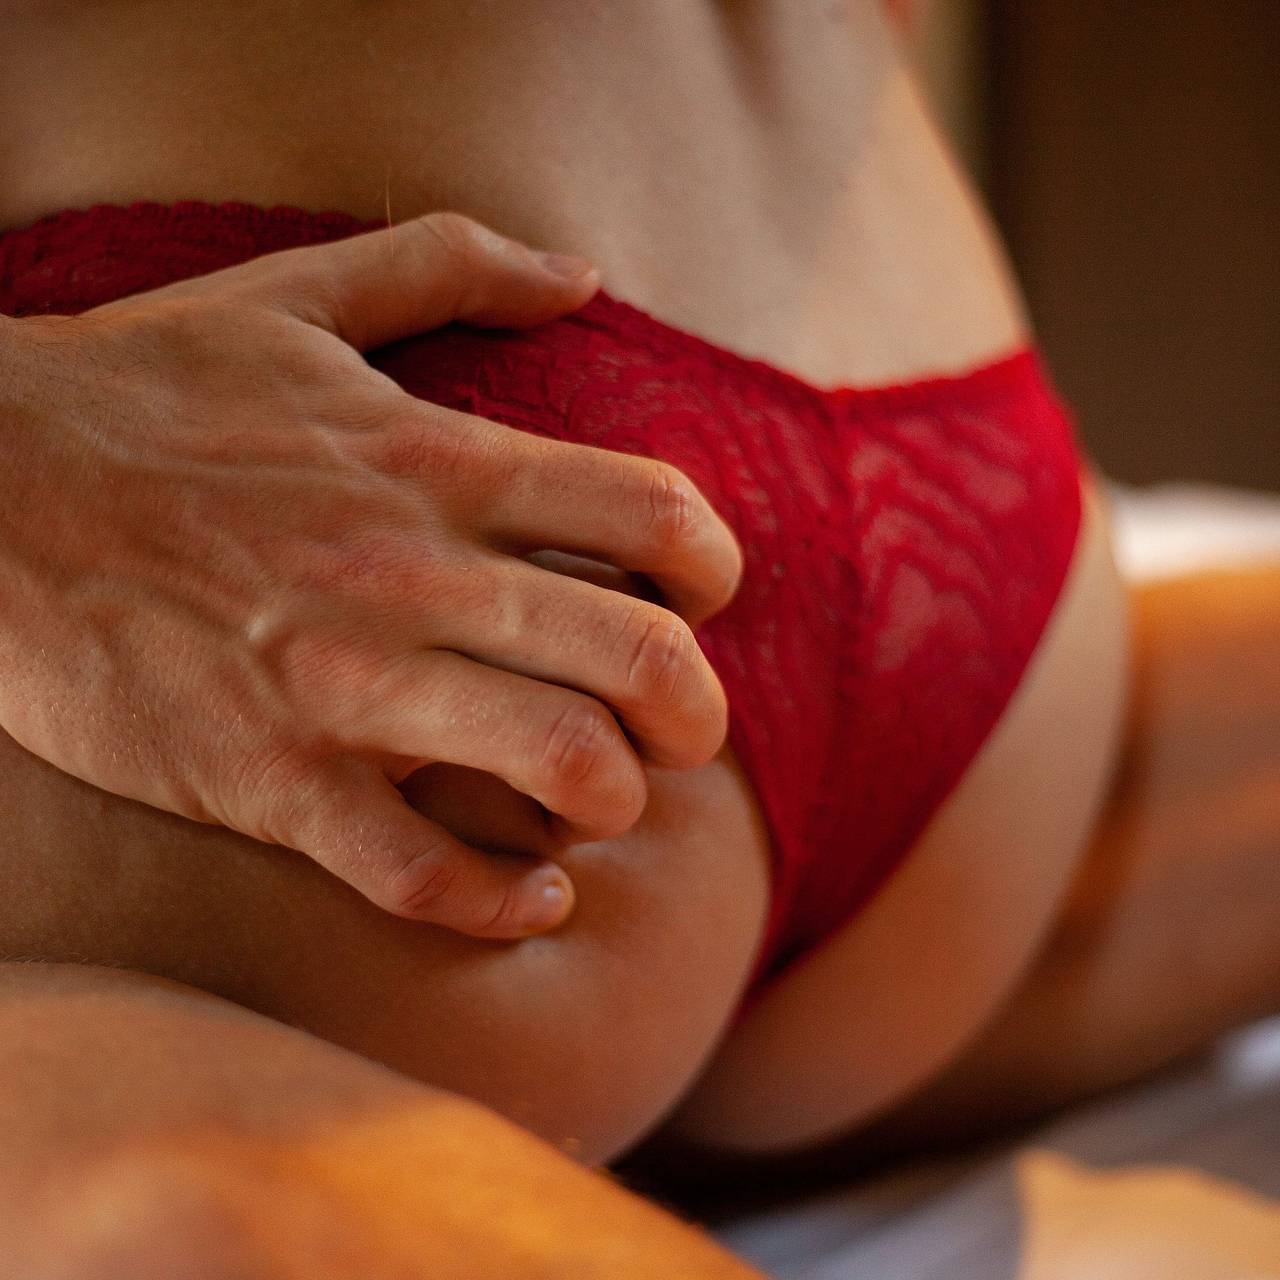 Можно ли похудеть, занимаясь любовью — отвечают гинеколог и сексолог | DOCTORPITER